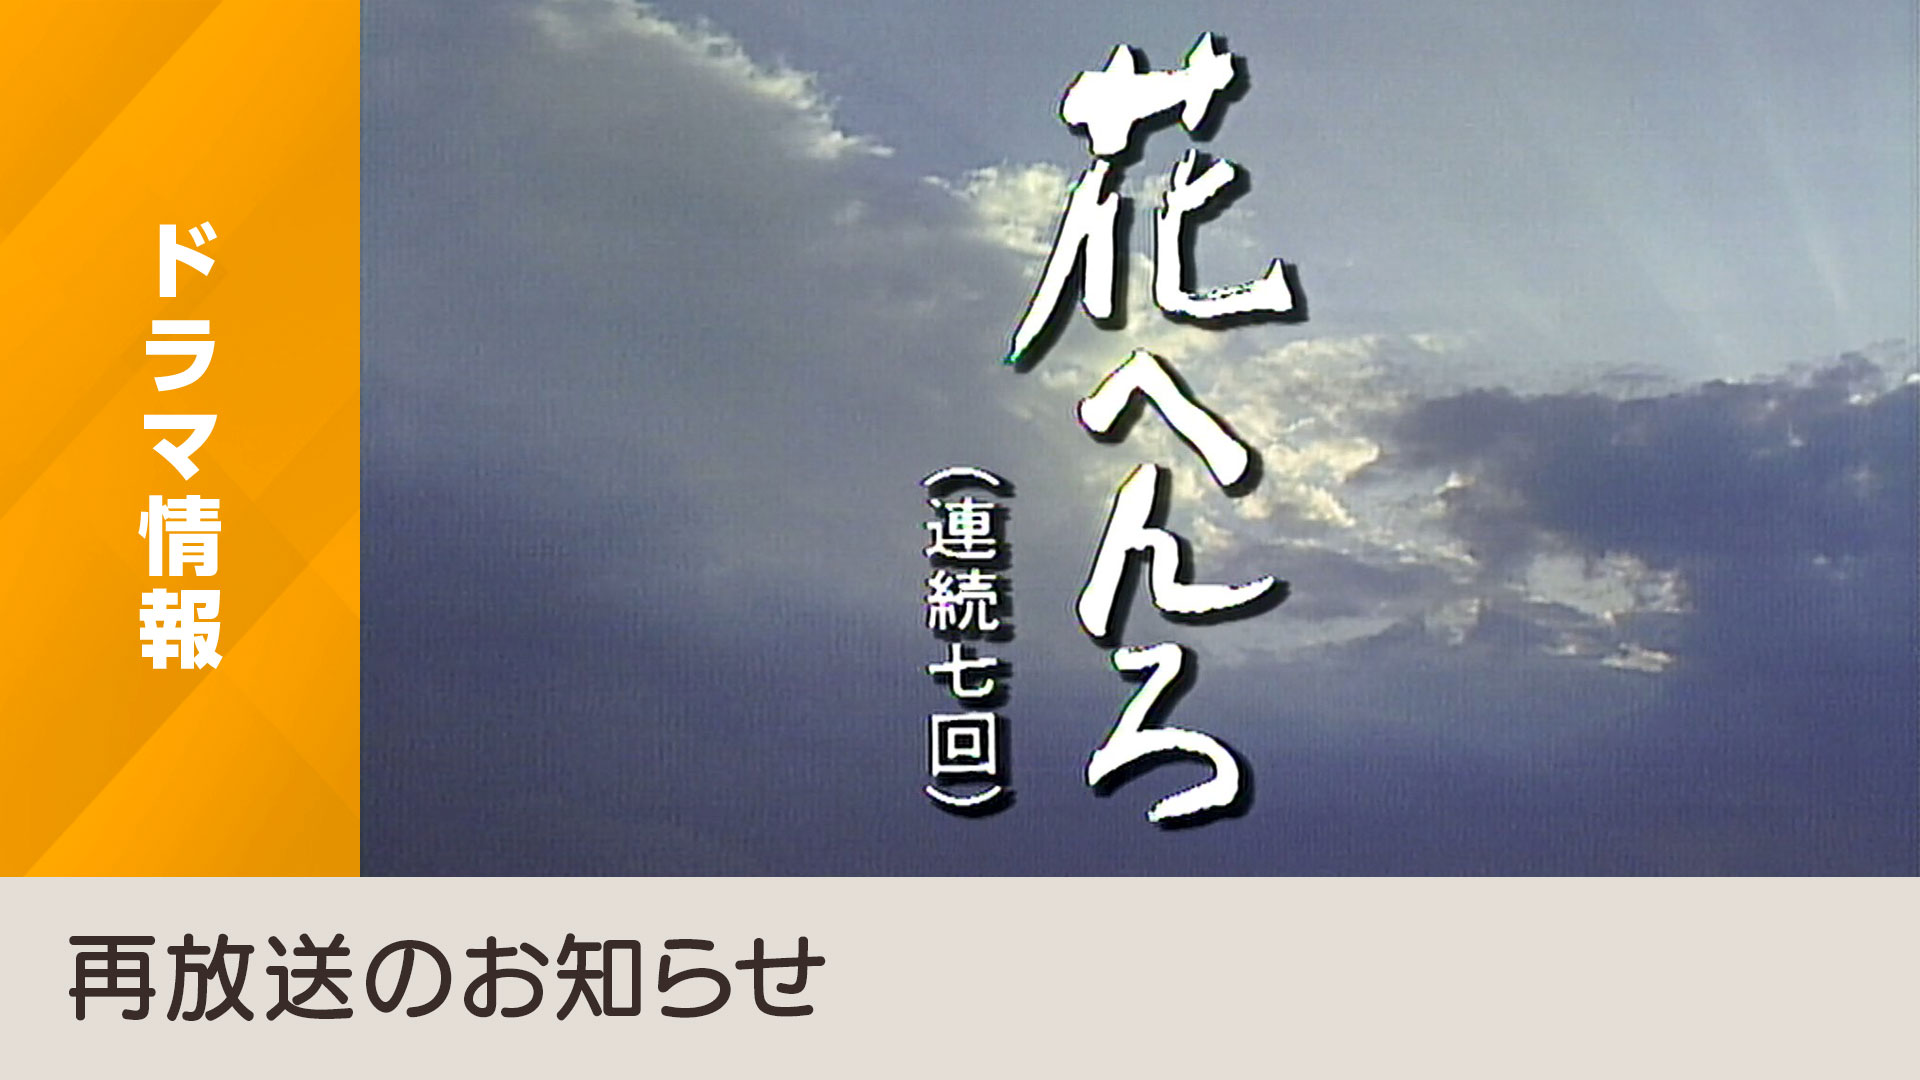 主演・桃井かおり×作・早坂暁の名作を4Kで再放送「花へんろ～風の昭和日記～」 - NHK